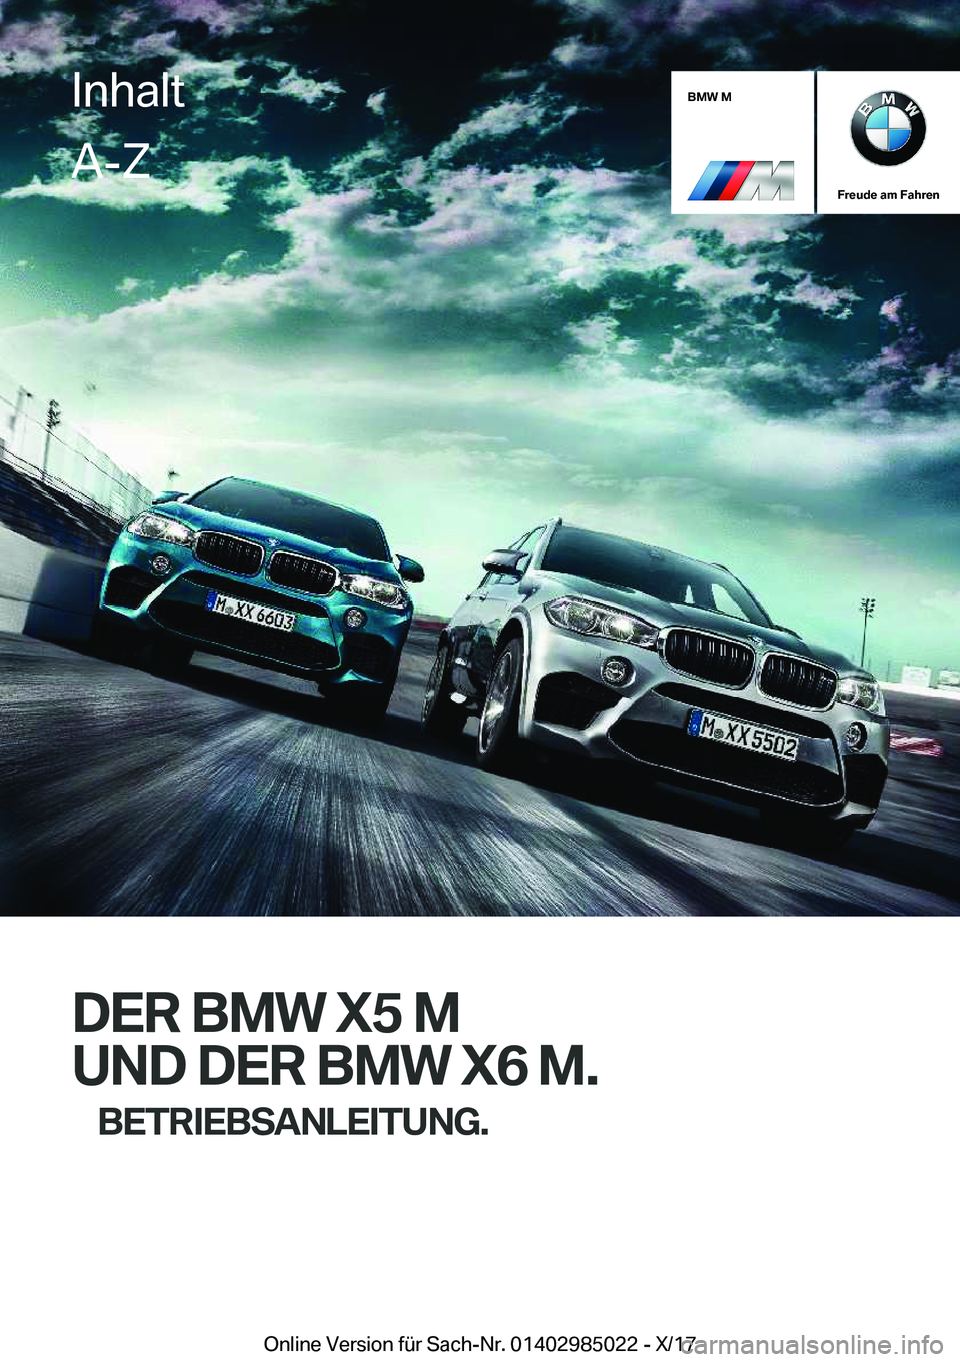 BMW X6 M 2018  Betriebsanleitungen (in German) �B�M�W��M
�F�r�e�u�d�e��a�m��F�a�h�r�e�n
�D�E�R��B�M�W��X�5��M�U�N�D��D�E�R��B�M�W��X�6��M�. �B�E�T�R�I�E�B�S�A�N�L�E�I�T�U�N�G�.
�I�n�h�a�l�t�A�-�Z
�O�n�l�i�n�e� �V�e�r�s�i�o�n� �f�